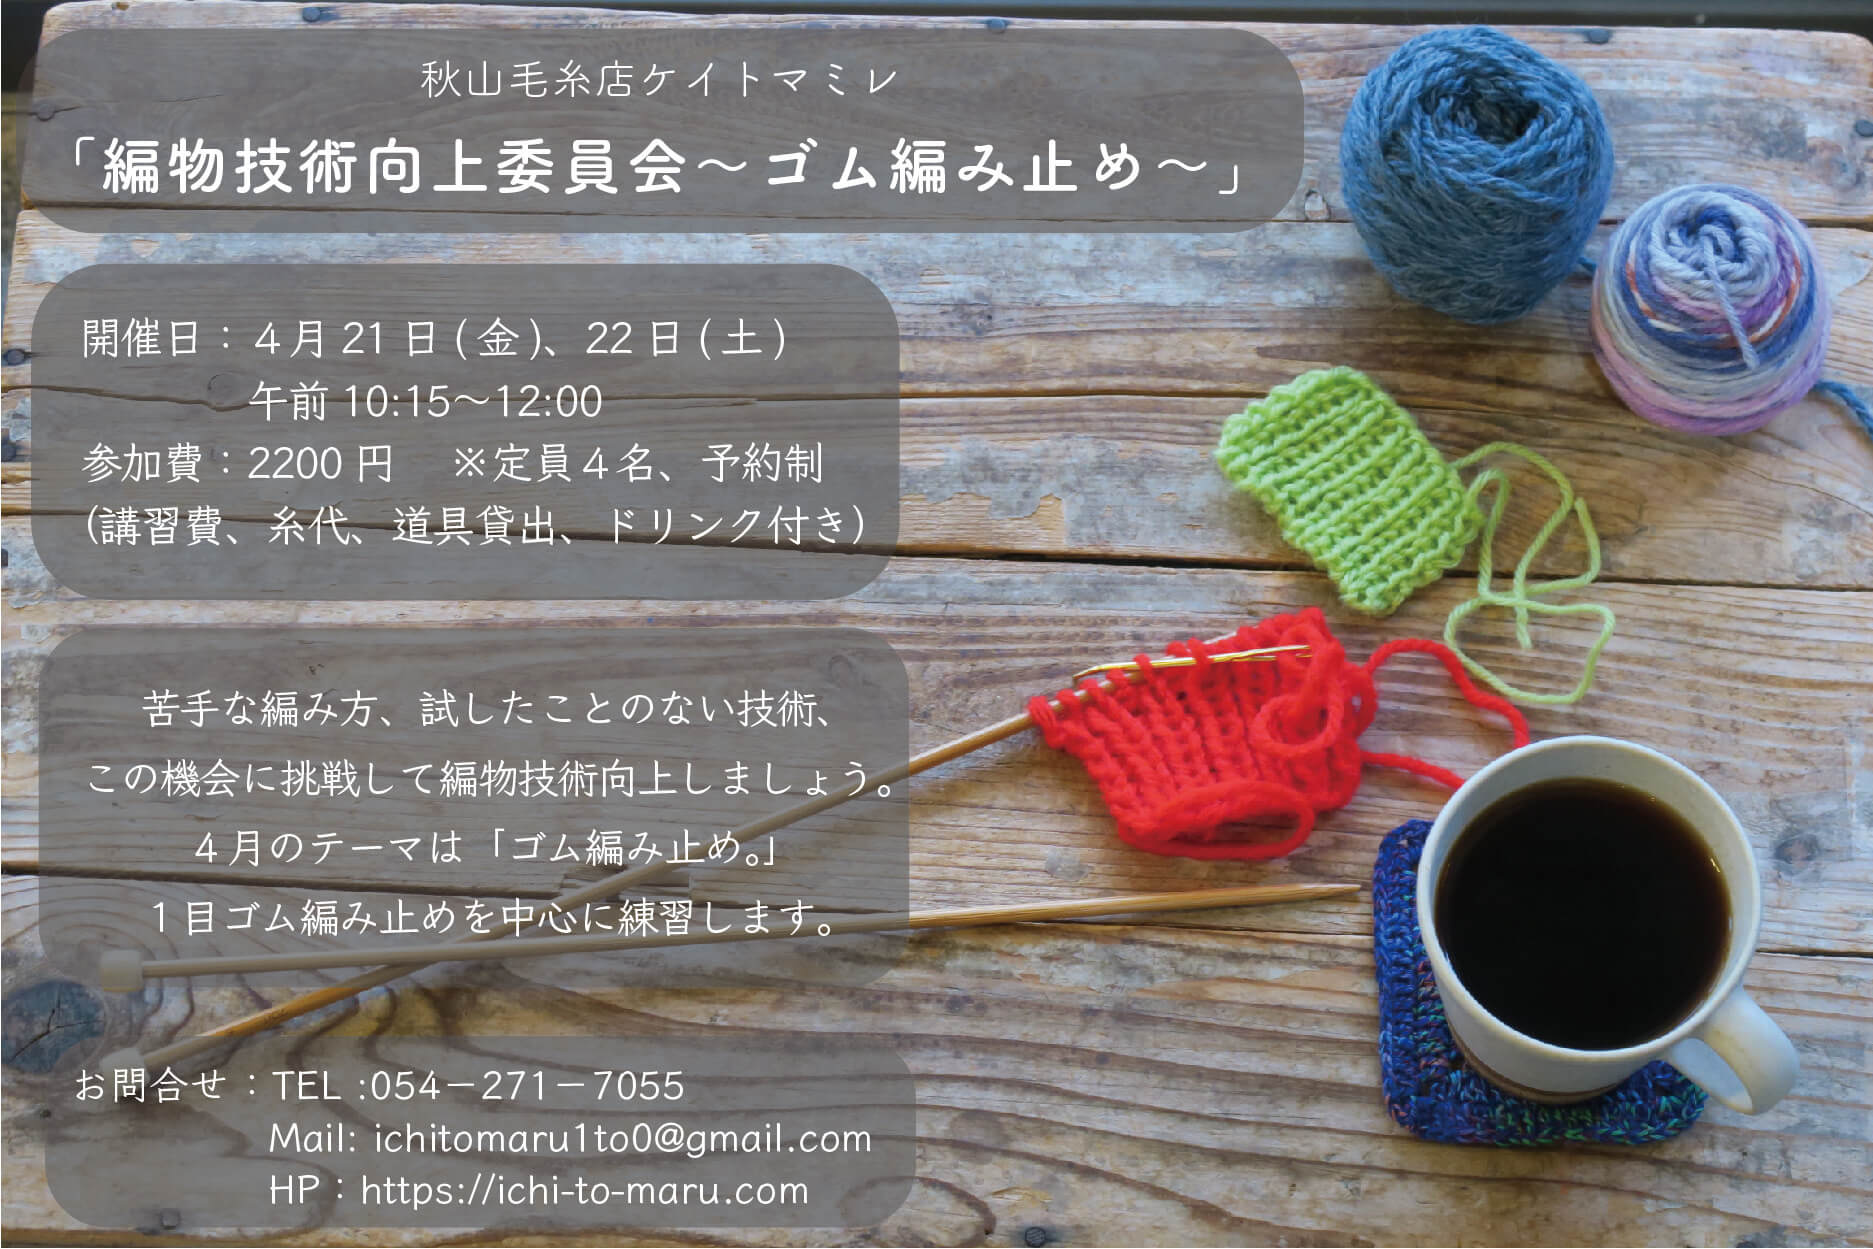 【イベント終了】4月の秋山毛糸店ケイトマミレ「編物技術向上委員会」開催